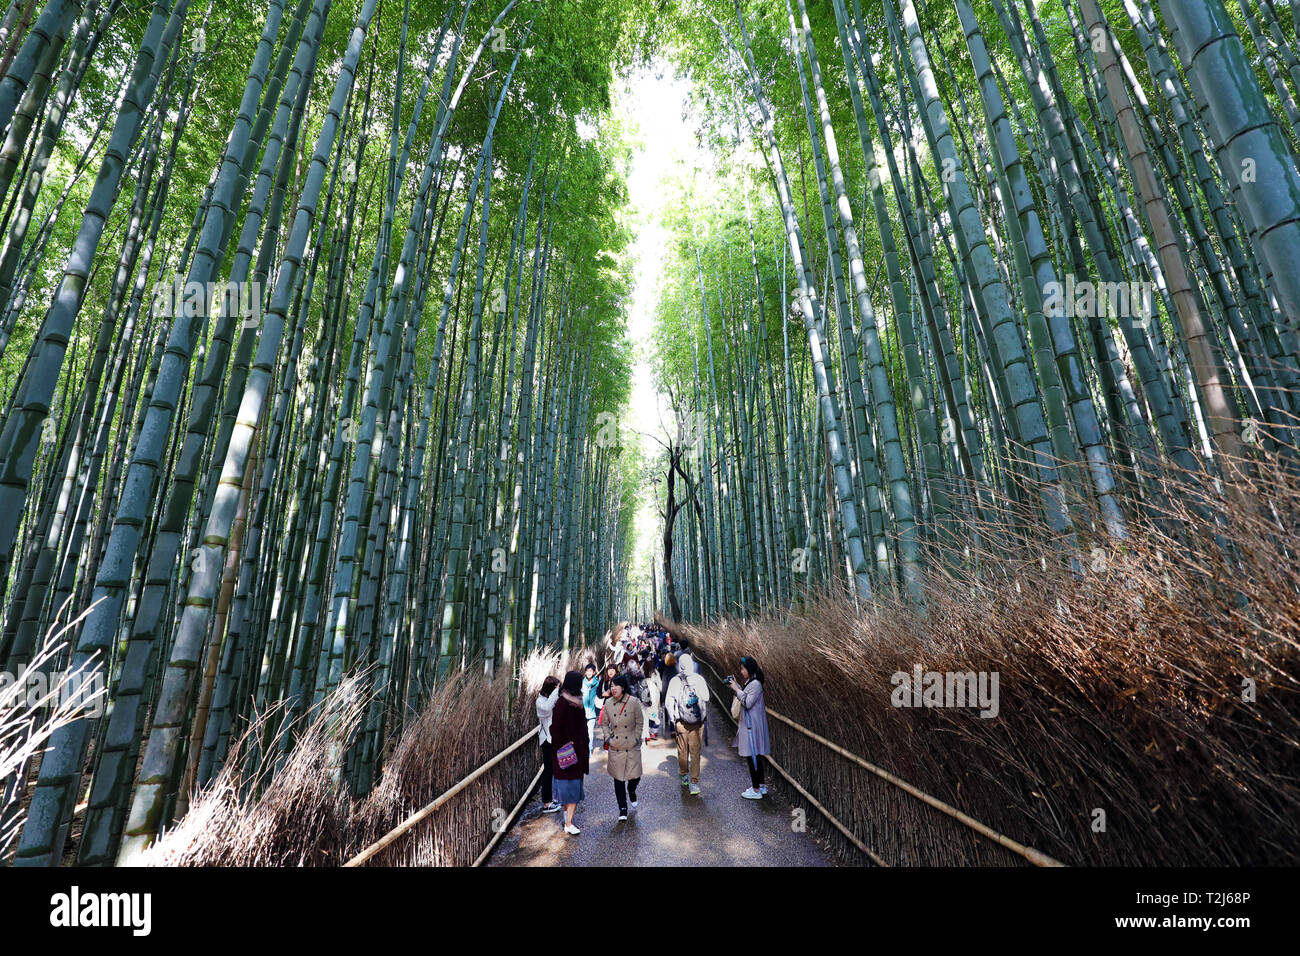 Tall Bamboo stalks in the Arashiyama Bamboo Grove, Kyoto, Japan Stock Photo